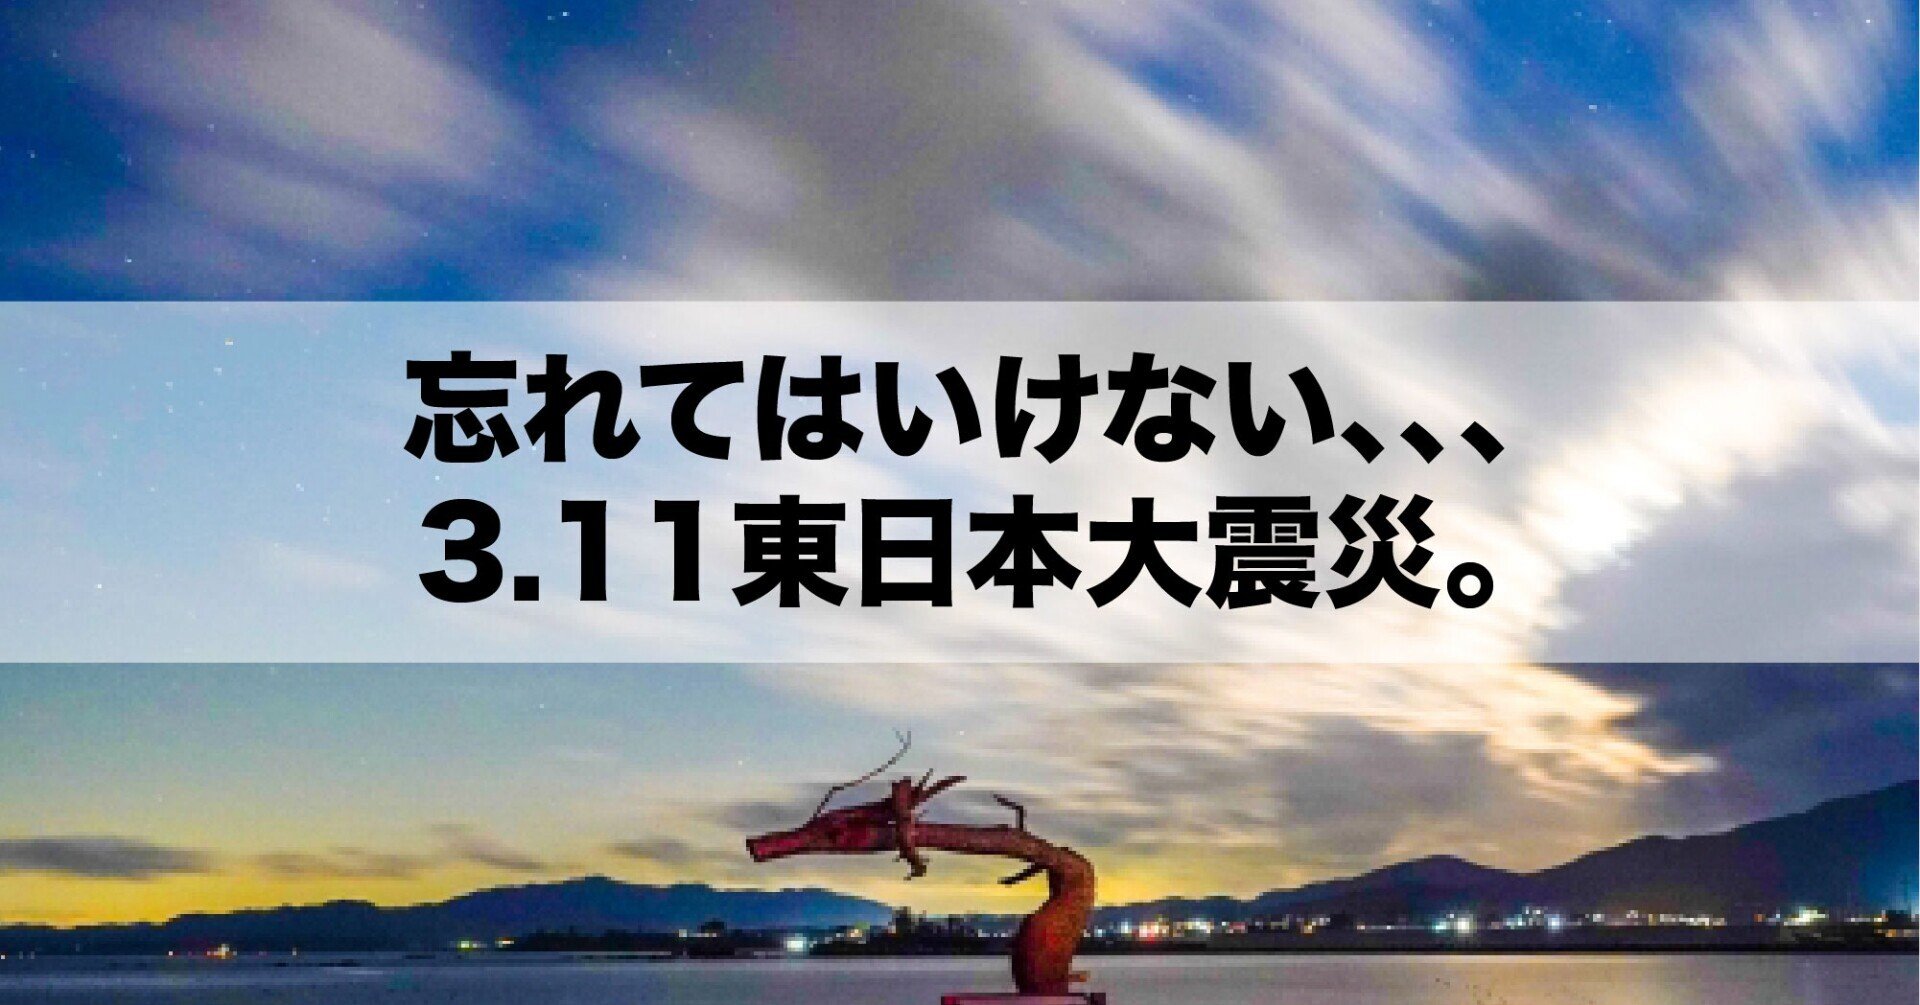 164.忘れてはいけない、、、3.11東日本大震災。｜坂井 直貴